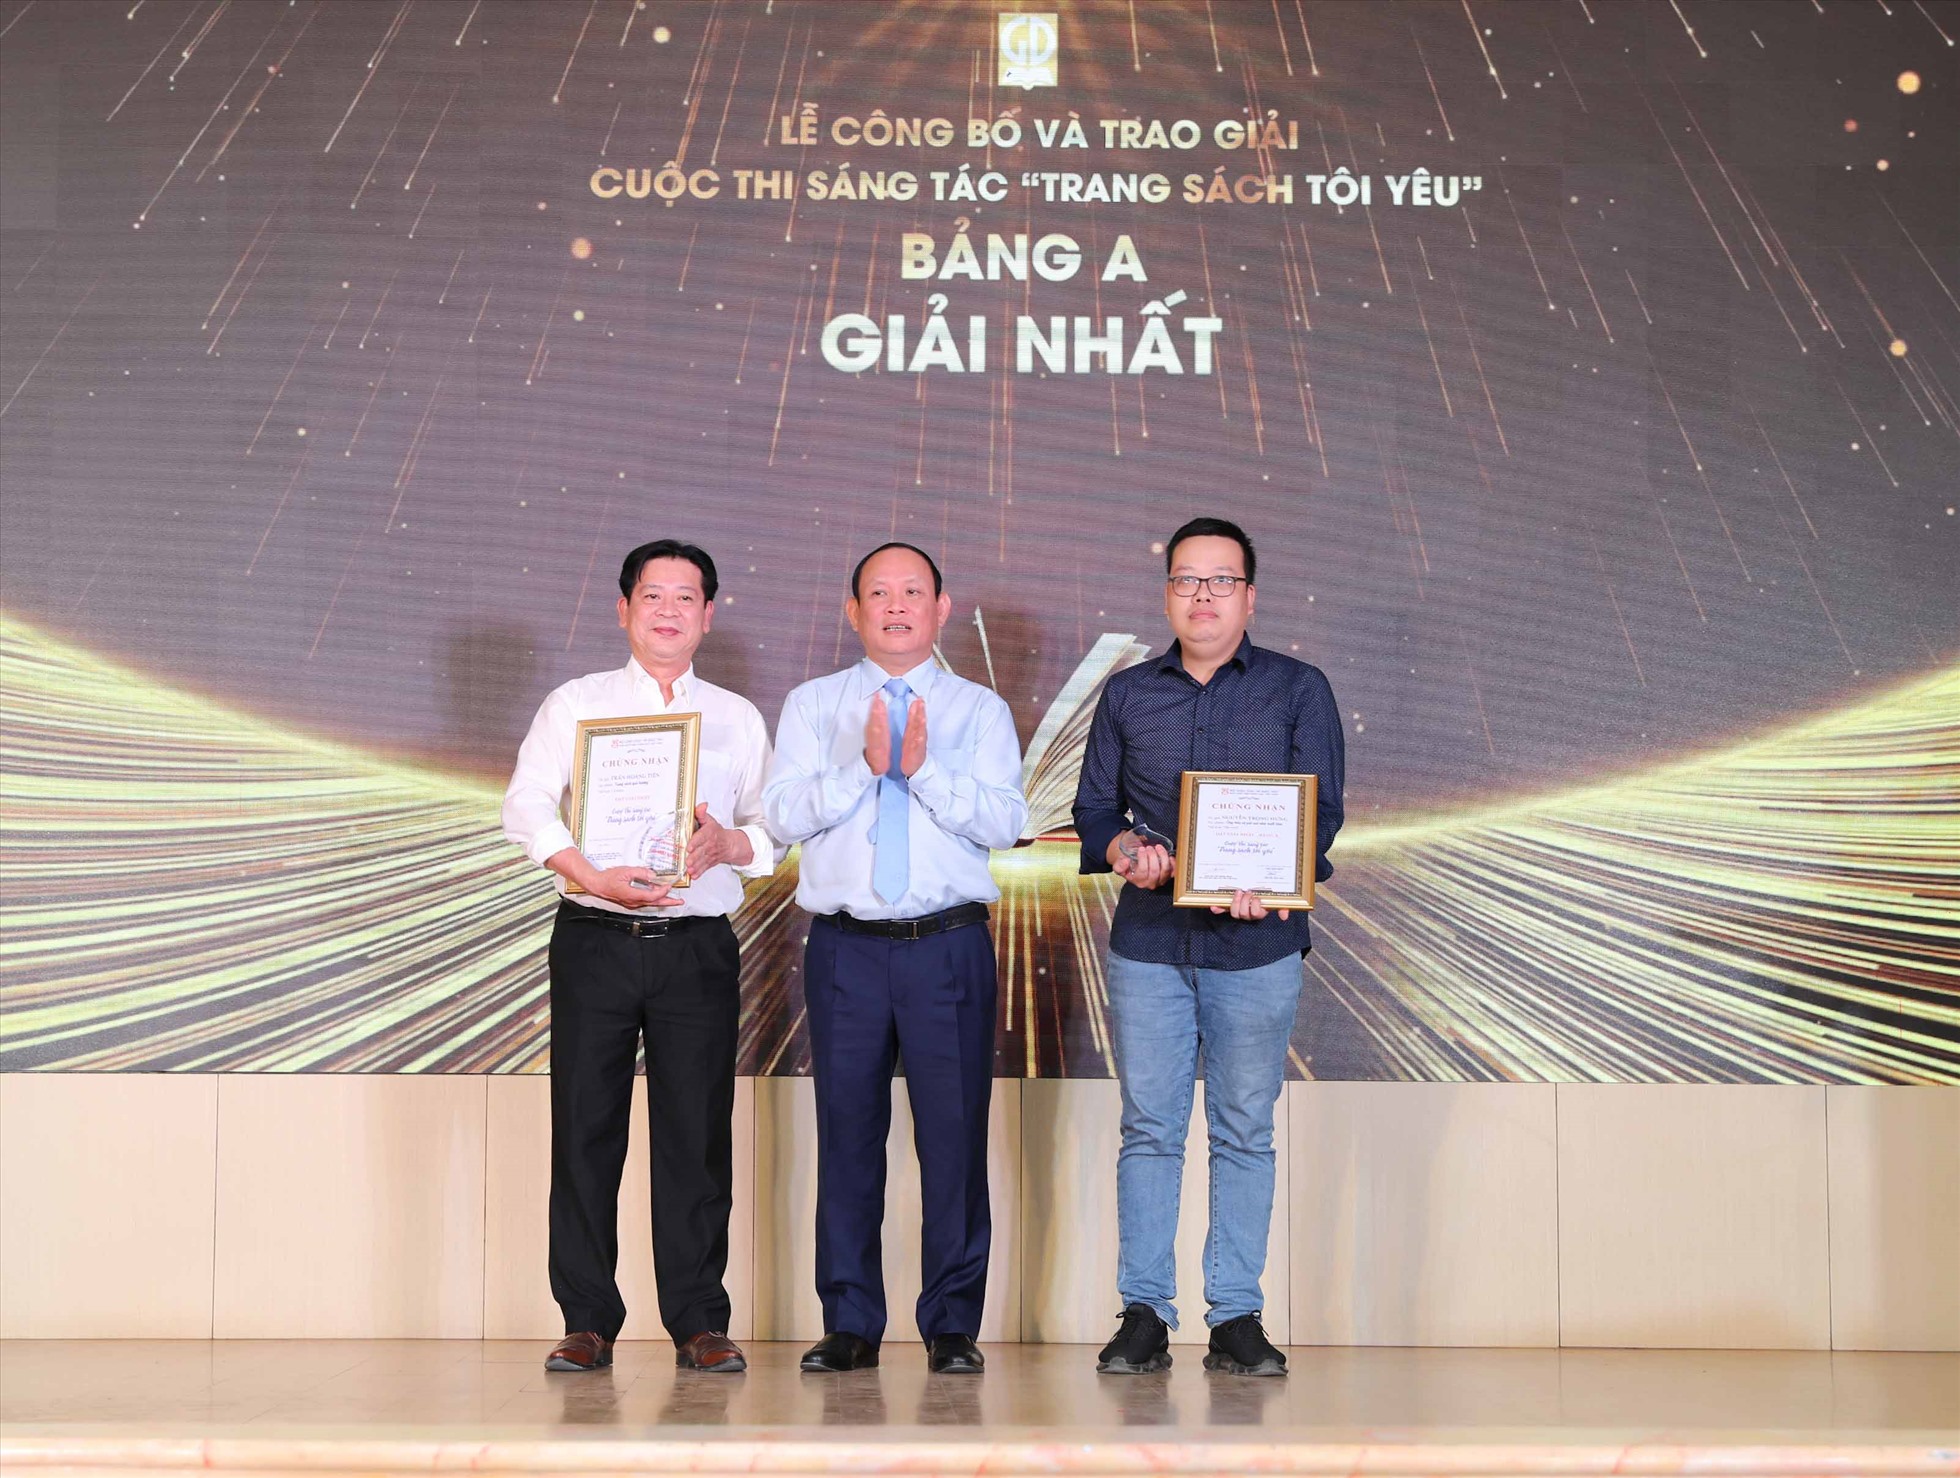 Lãnh đạo Nhà Xuất bản Giáo dục Việt Nam trao giải Nhất bảng A cho các cá nhân.